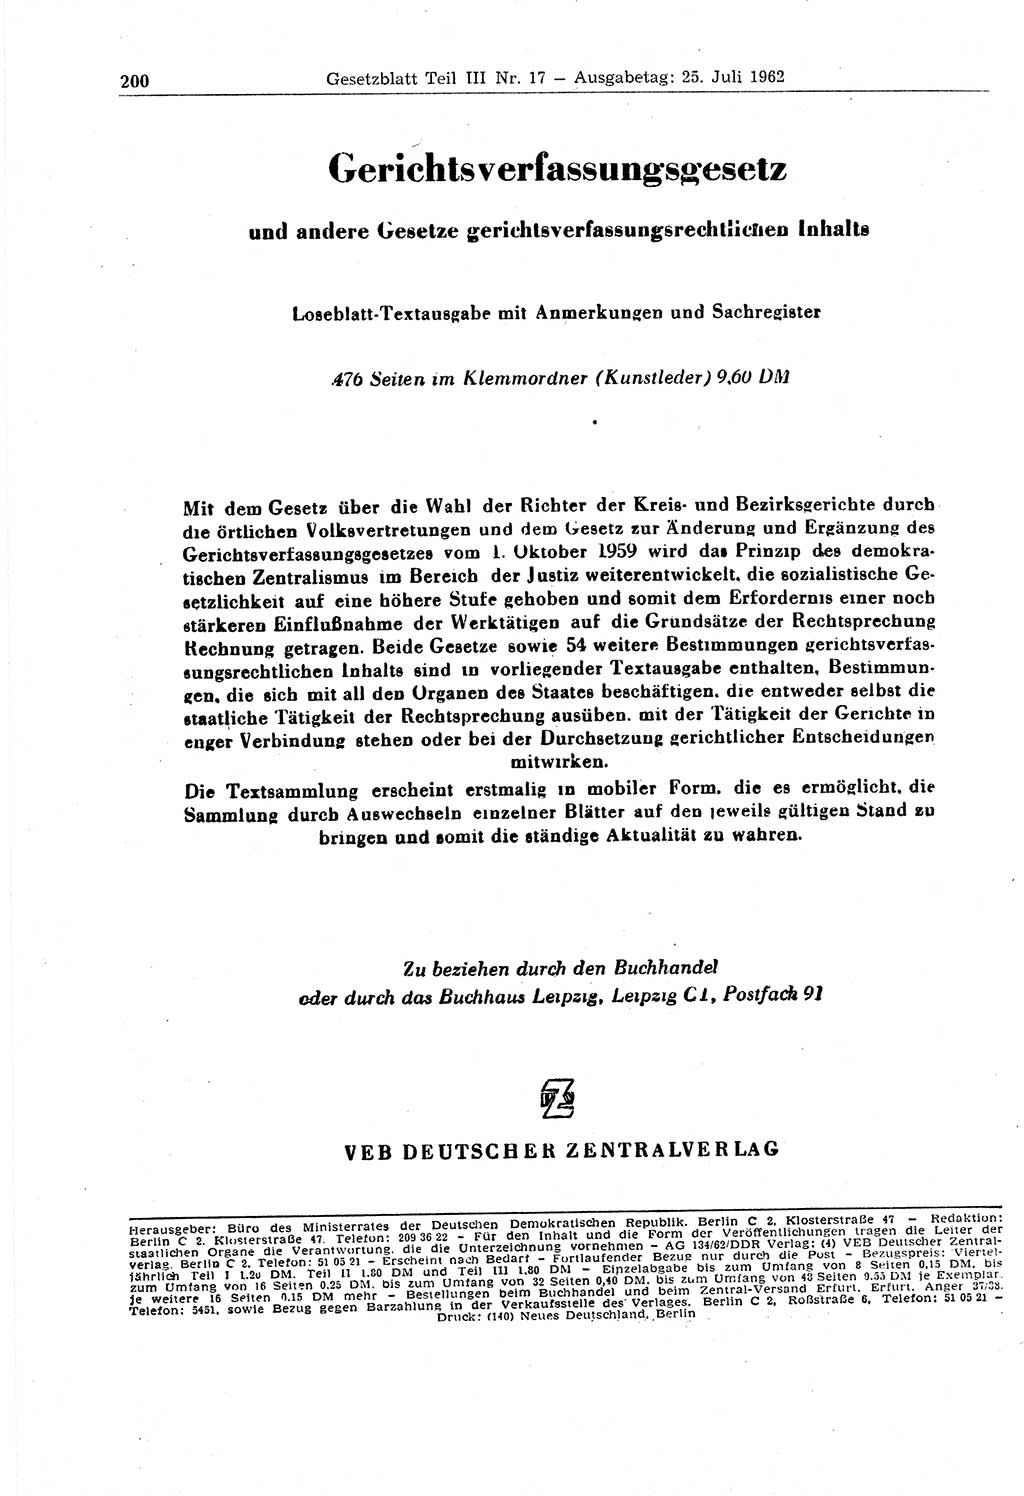 Gesetzblatt (GBl.) der Deutschen Demokratischen Republik (DDR) Teil ⅠⅠⅠ 1962, Seite 200 (GBl. DDR ⅠⅠⅠ 1962, S. 200)